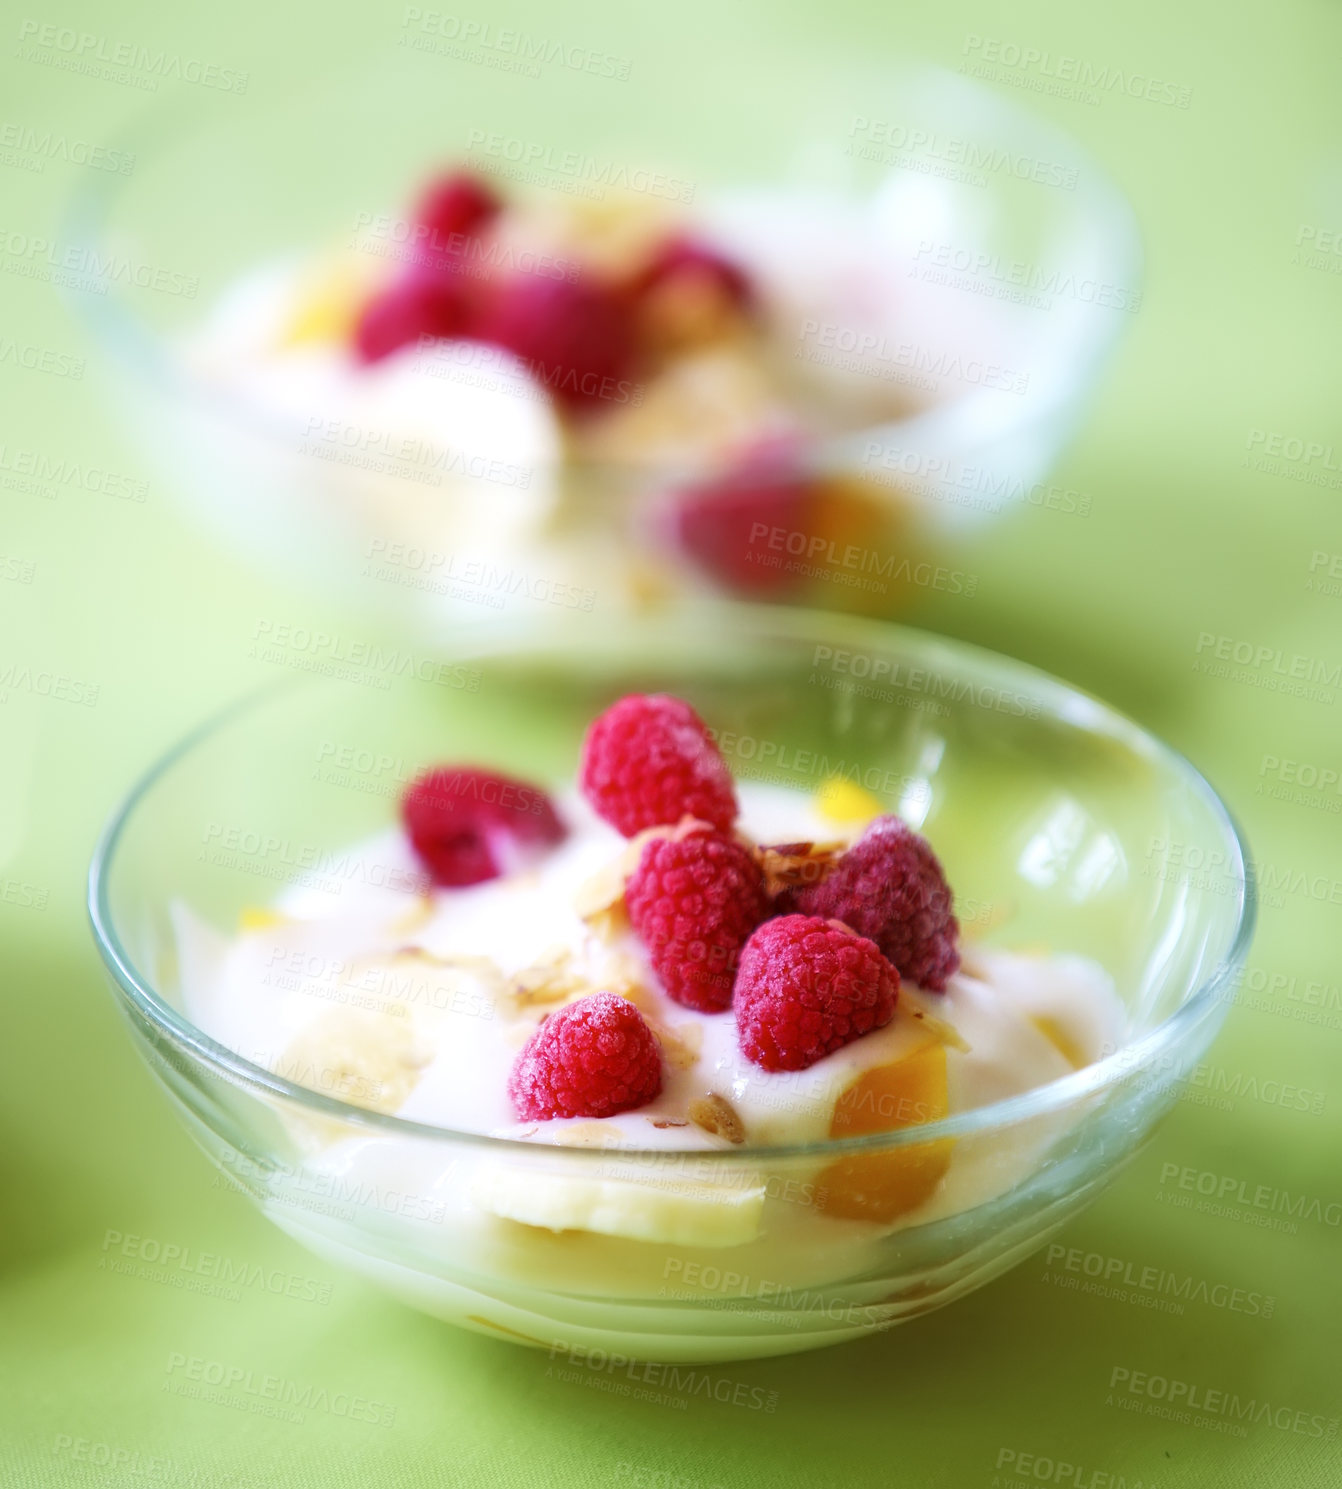 Buy stock photo A photo of dessert - raspberries, banana and cream